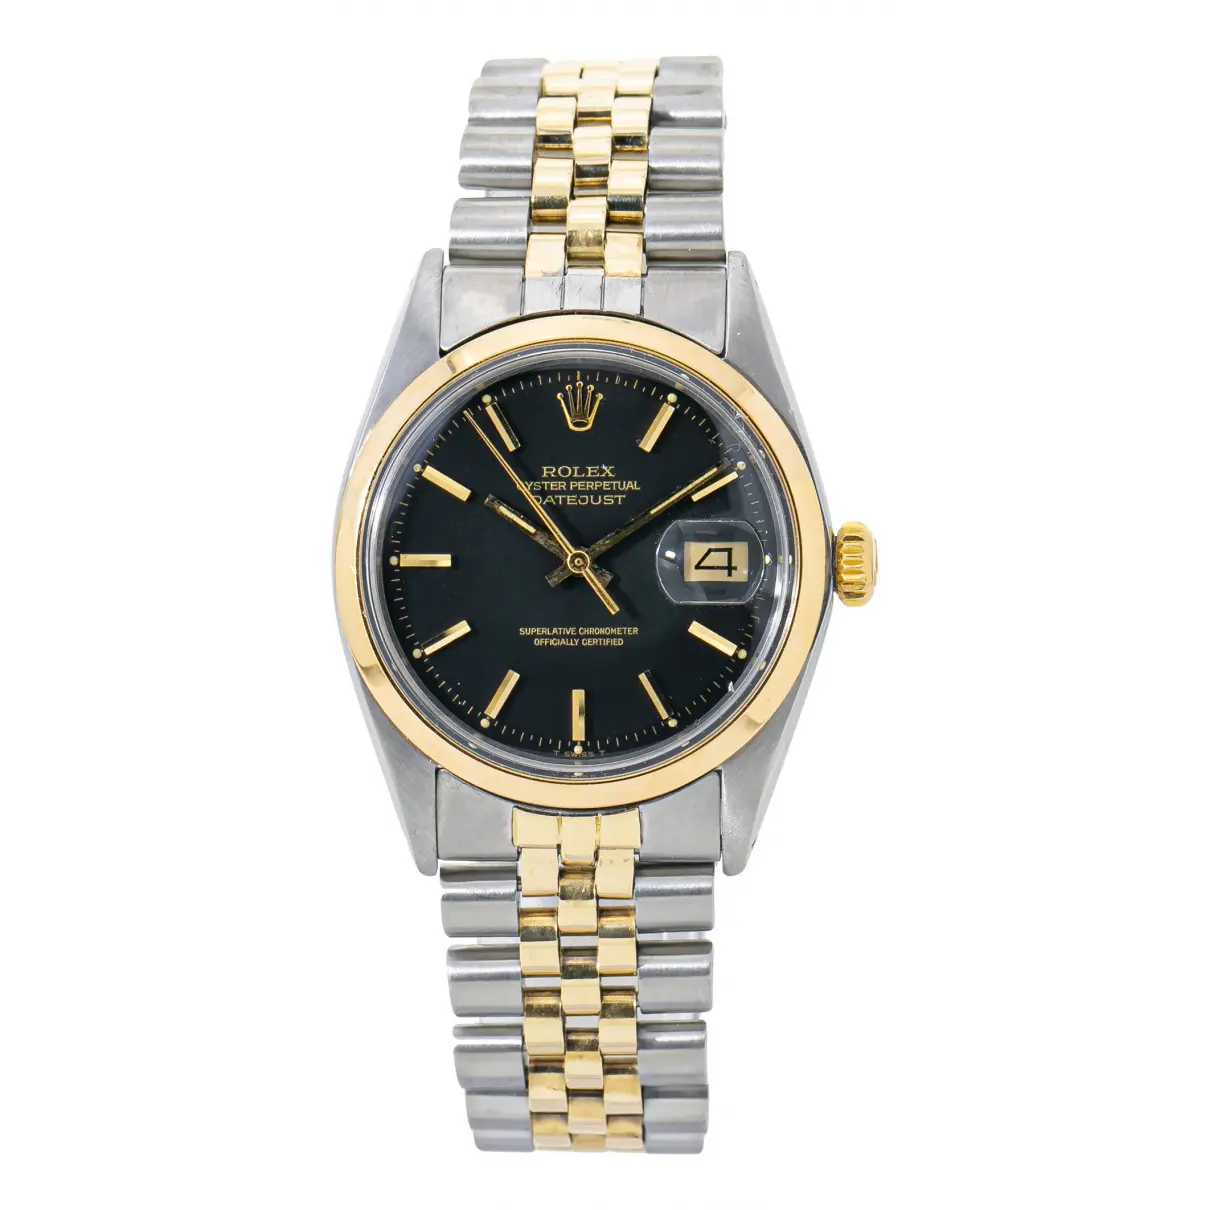 Datejust 36mm watch Rolex - Vintage